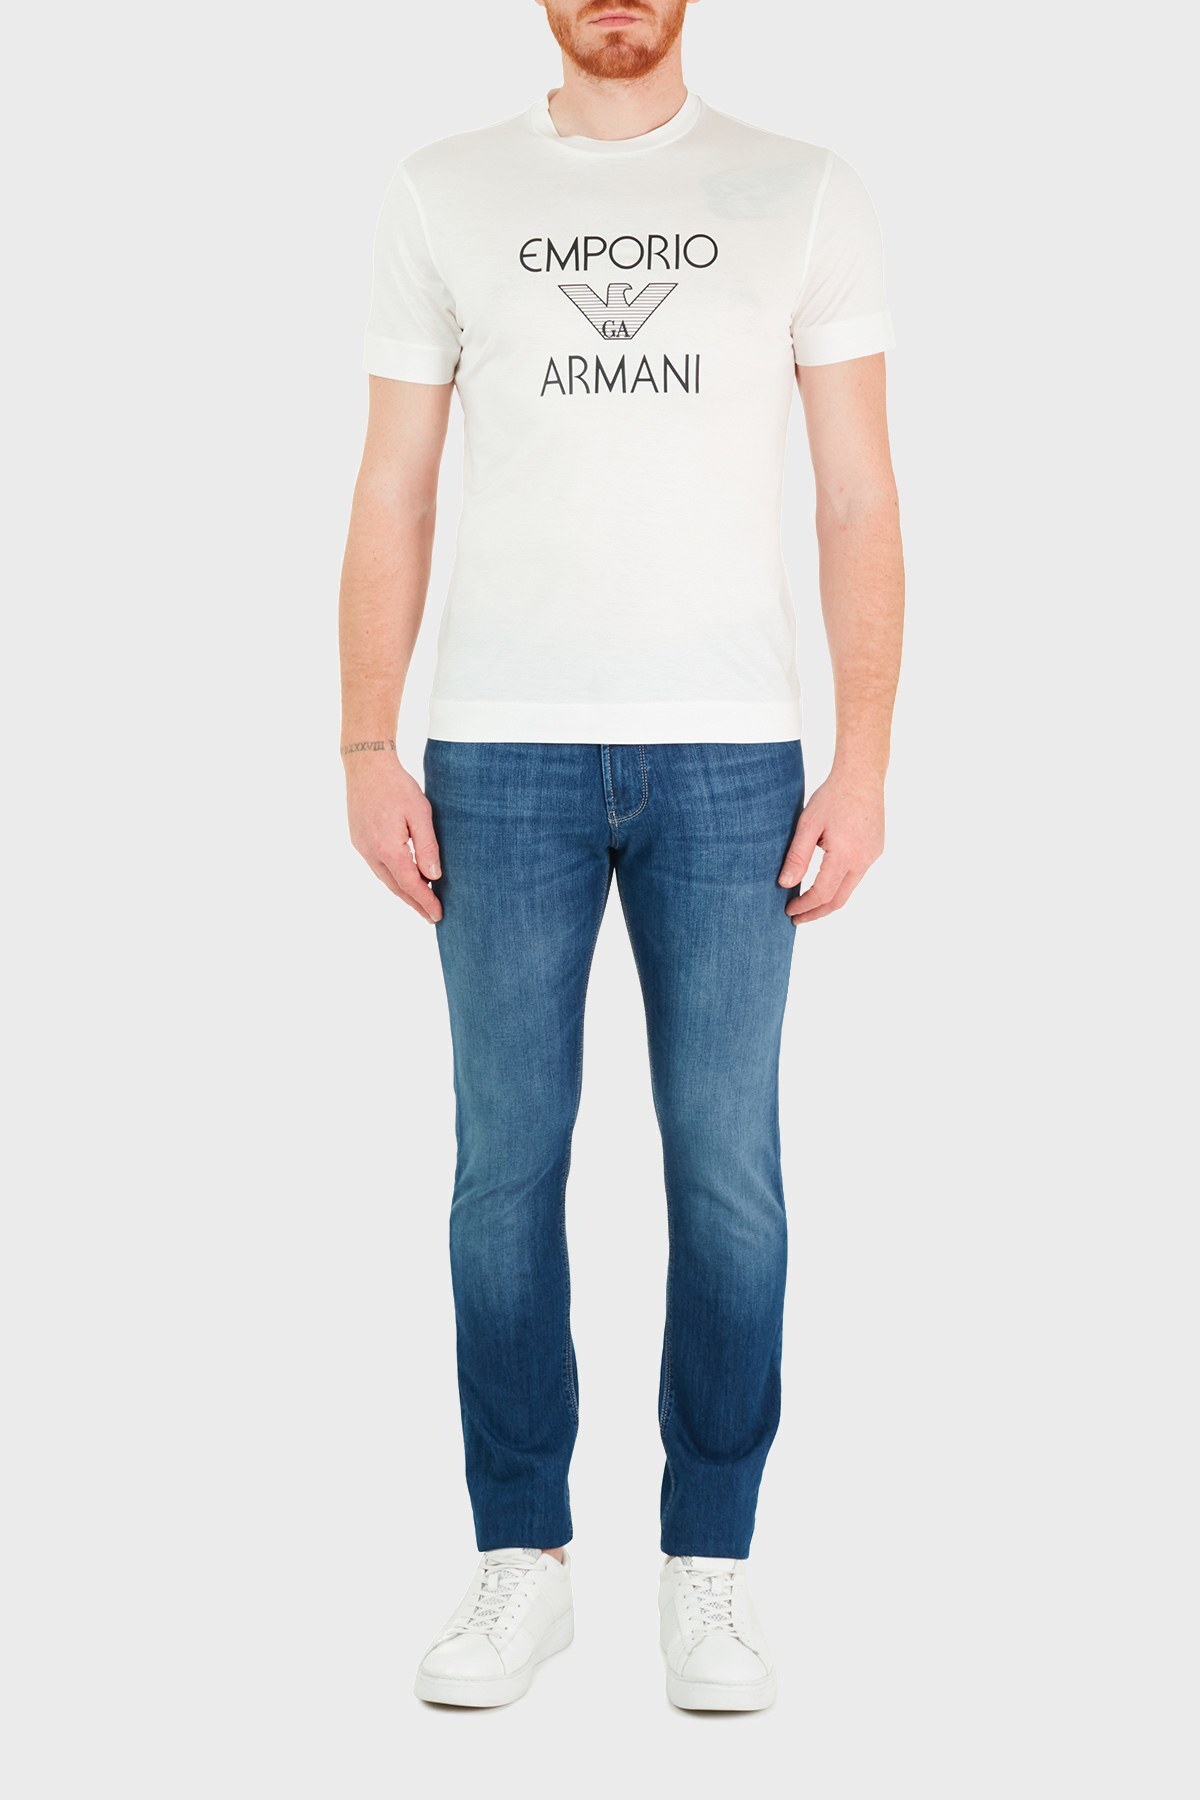 Emporio Armani Slim Fit Pamuklu J06 Jeans Erkek Kot Pantolon 3K1J06 1D5QZ 0942 LACİVERT